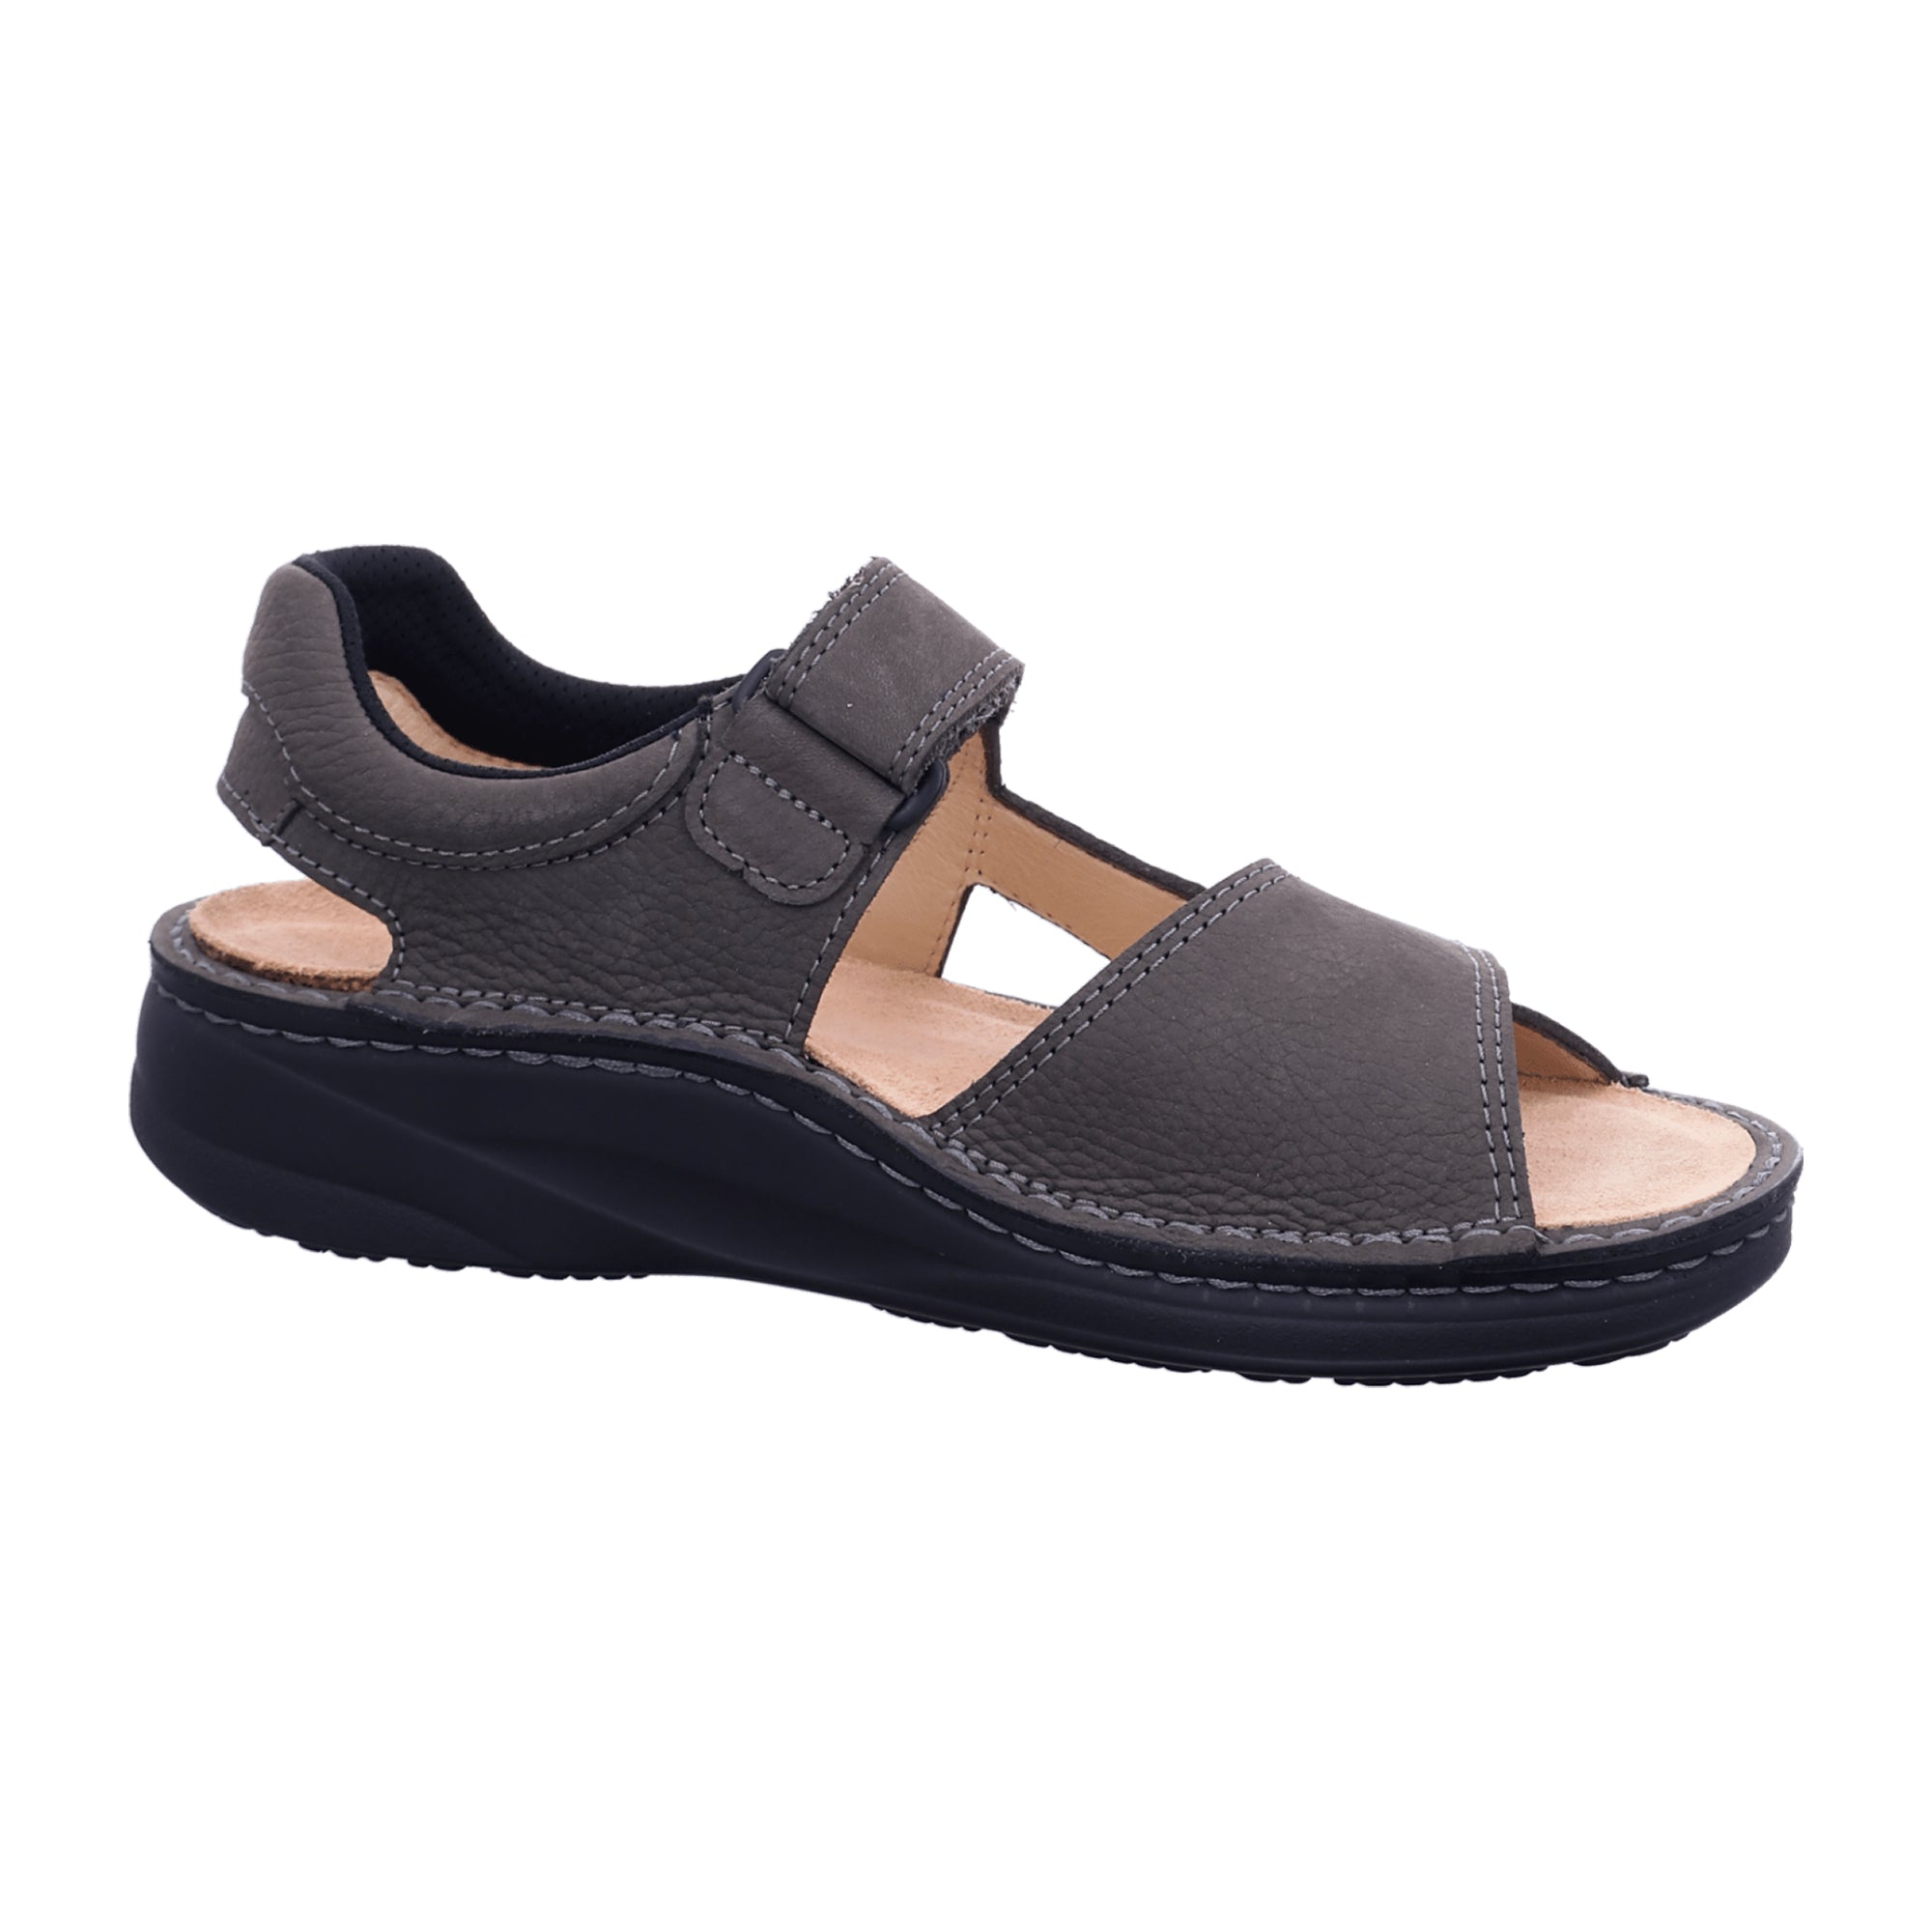 Finn Comfort Skiathos Men's Comfort Sandals - Grey/Black Leather with Adjustable Soft Footbed